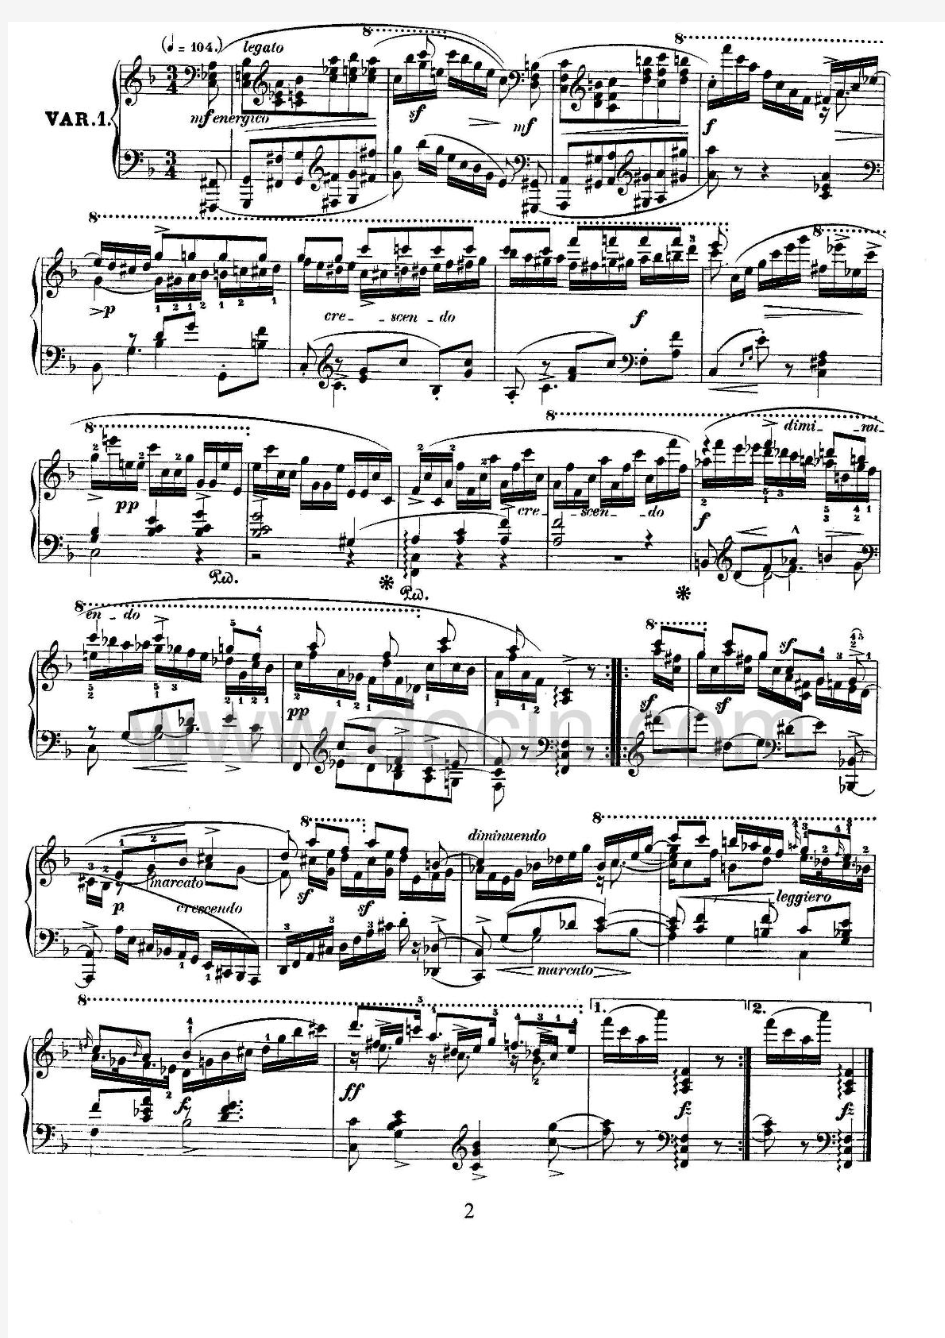 舒曼阿贝格变奏曲VariationsontheNameAbeggOp1Schumann钢琴谱